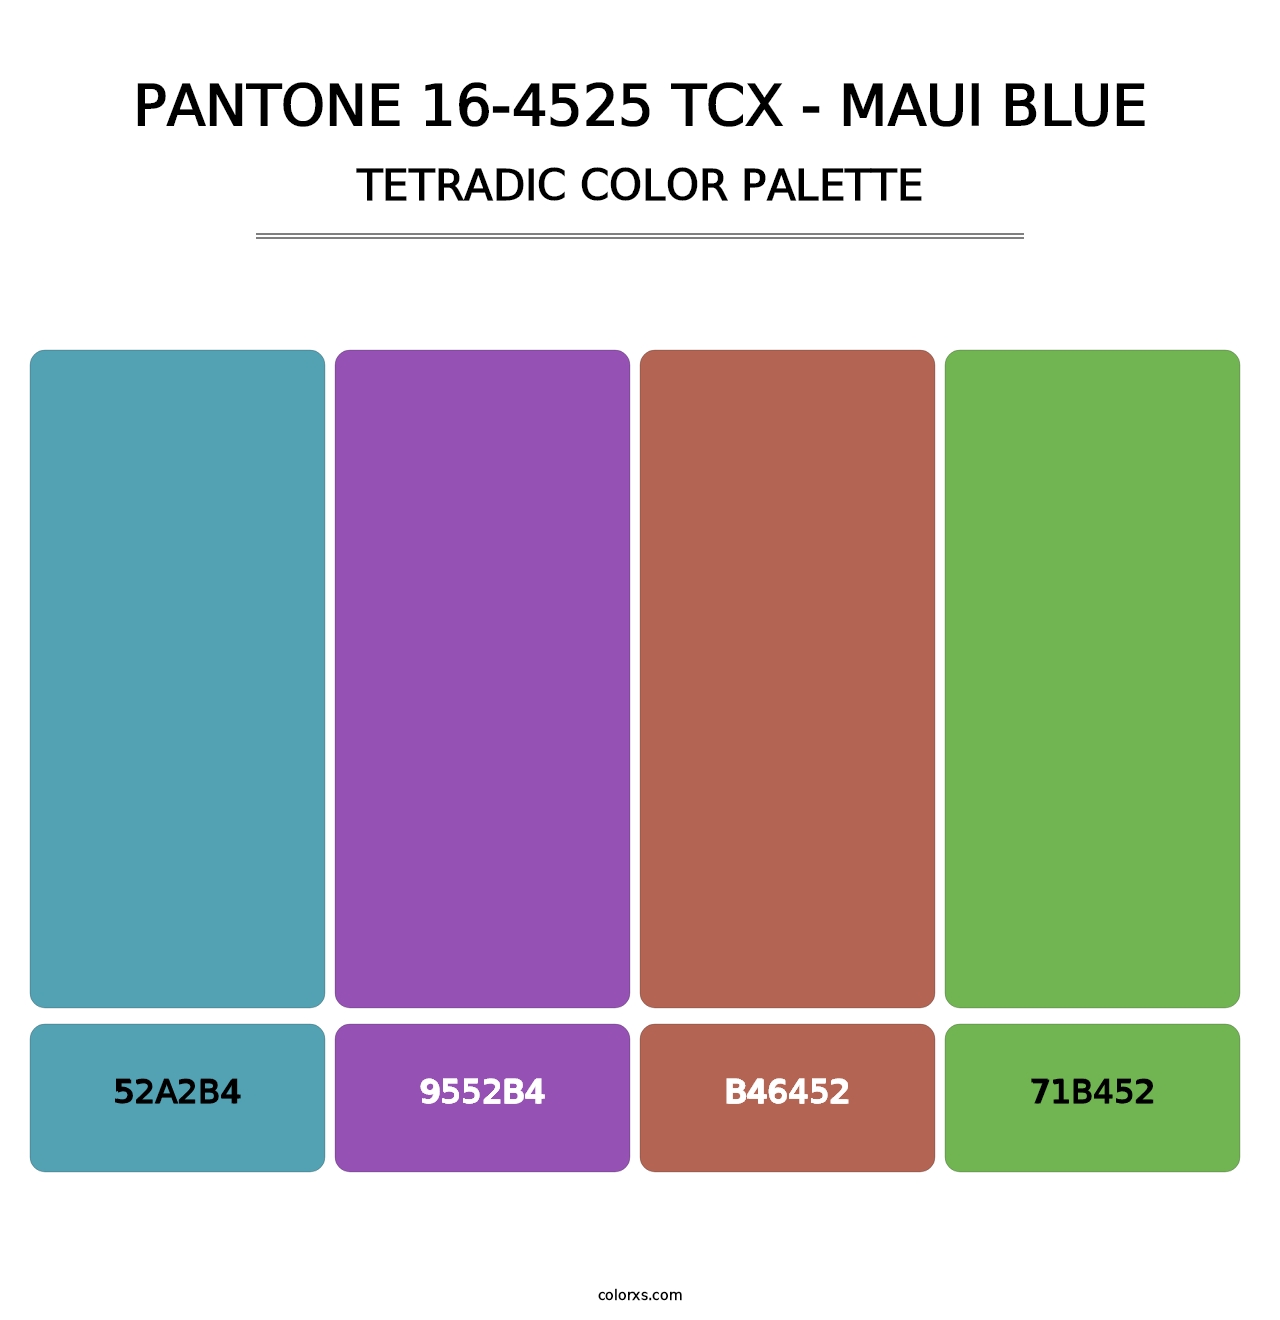 PANTONE 16-4525 TCX - Maui Blue - Tetradic Color Palette